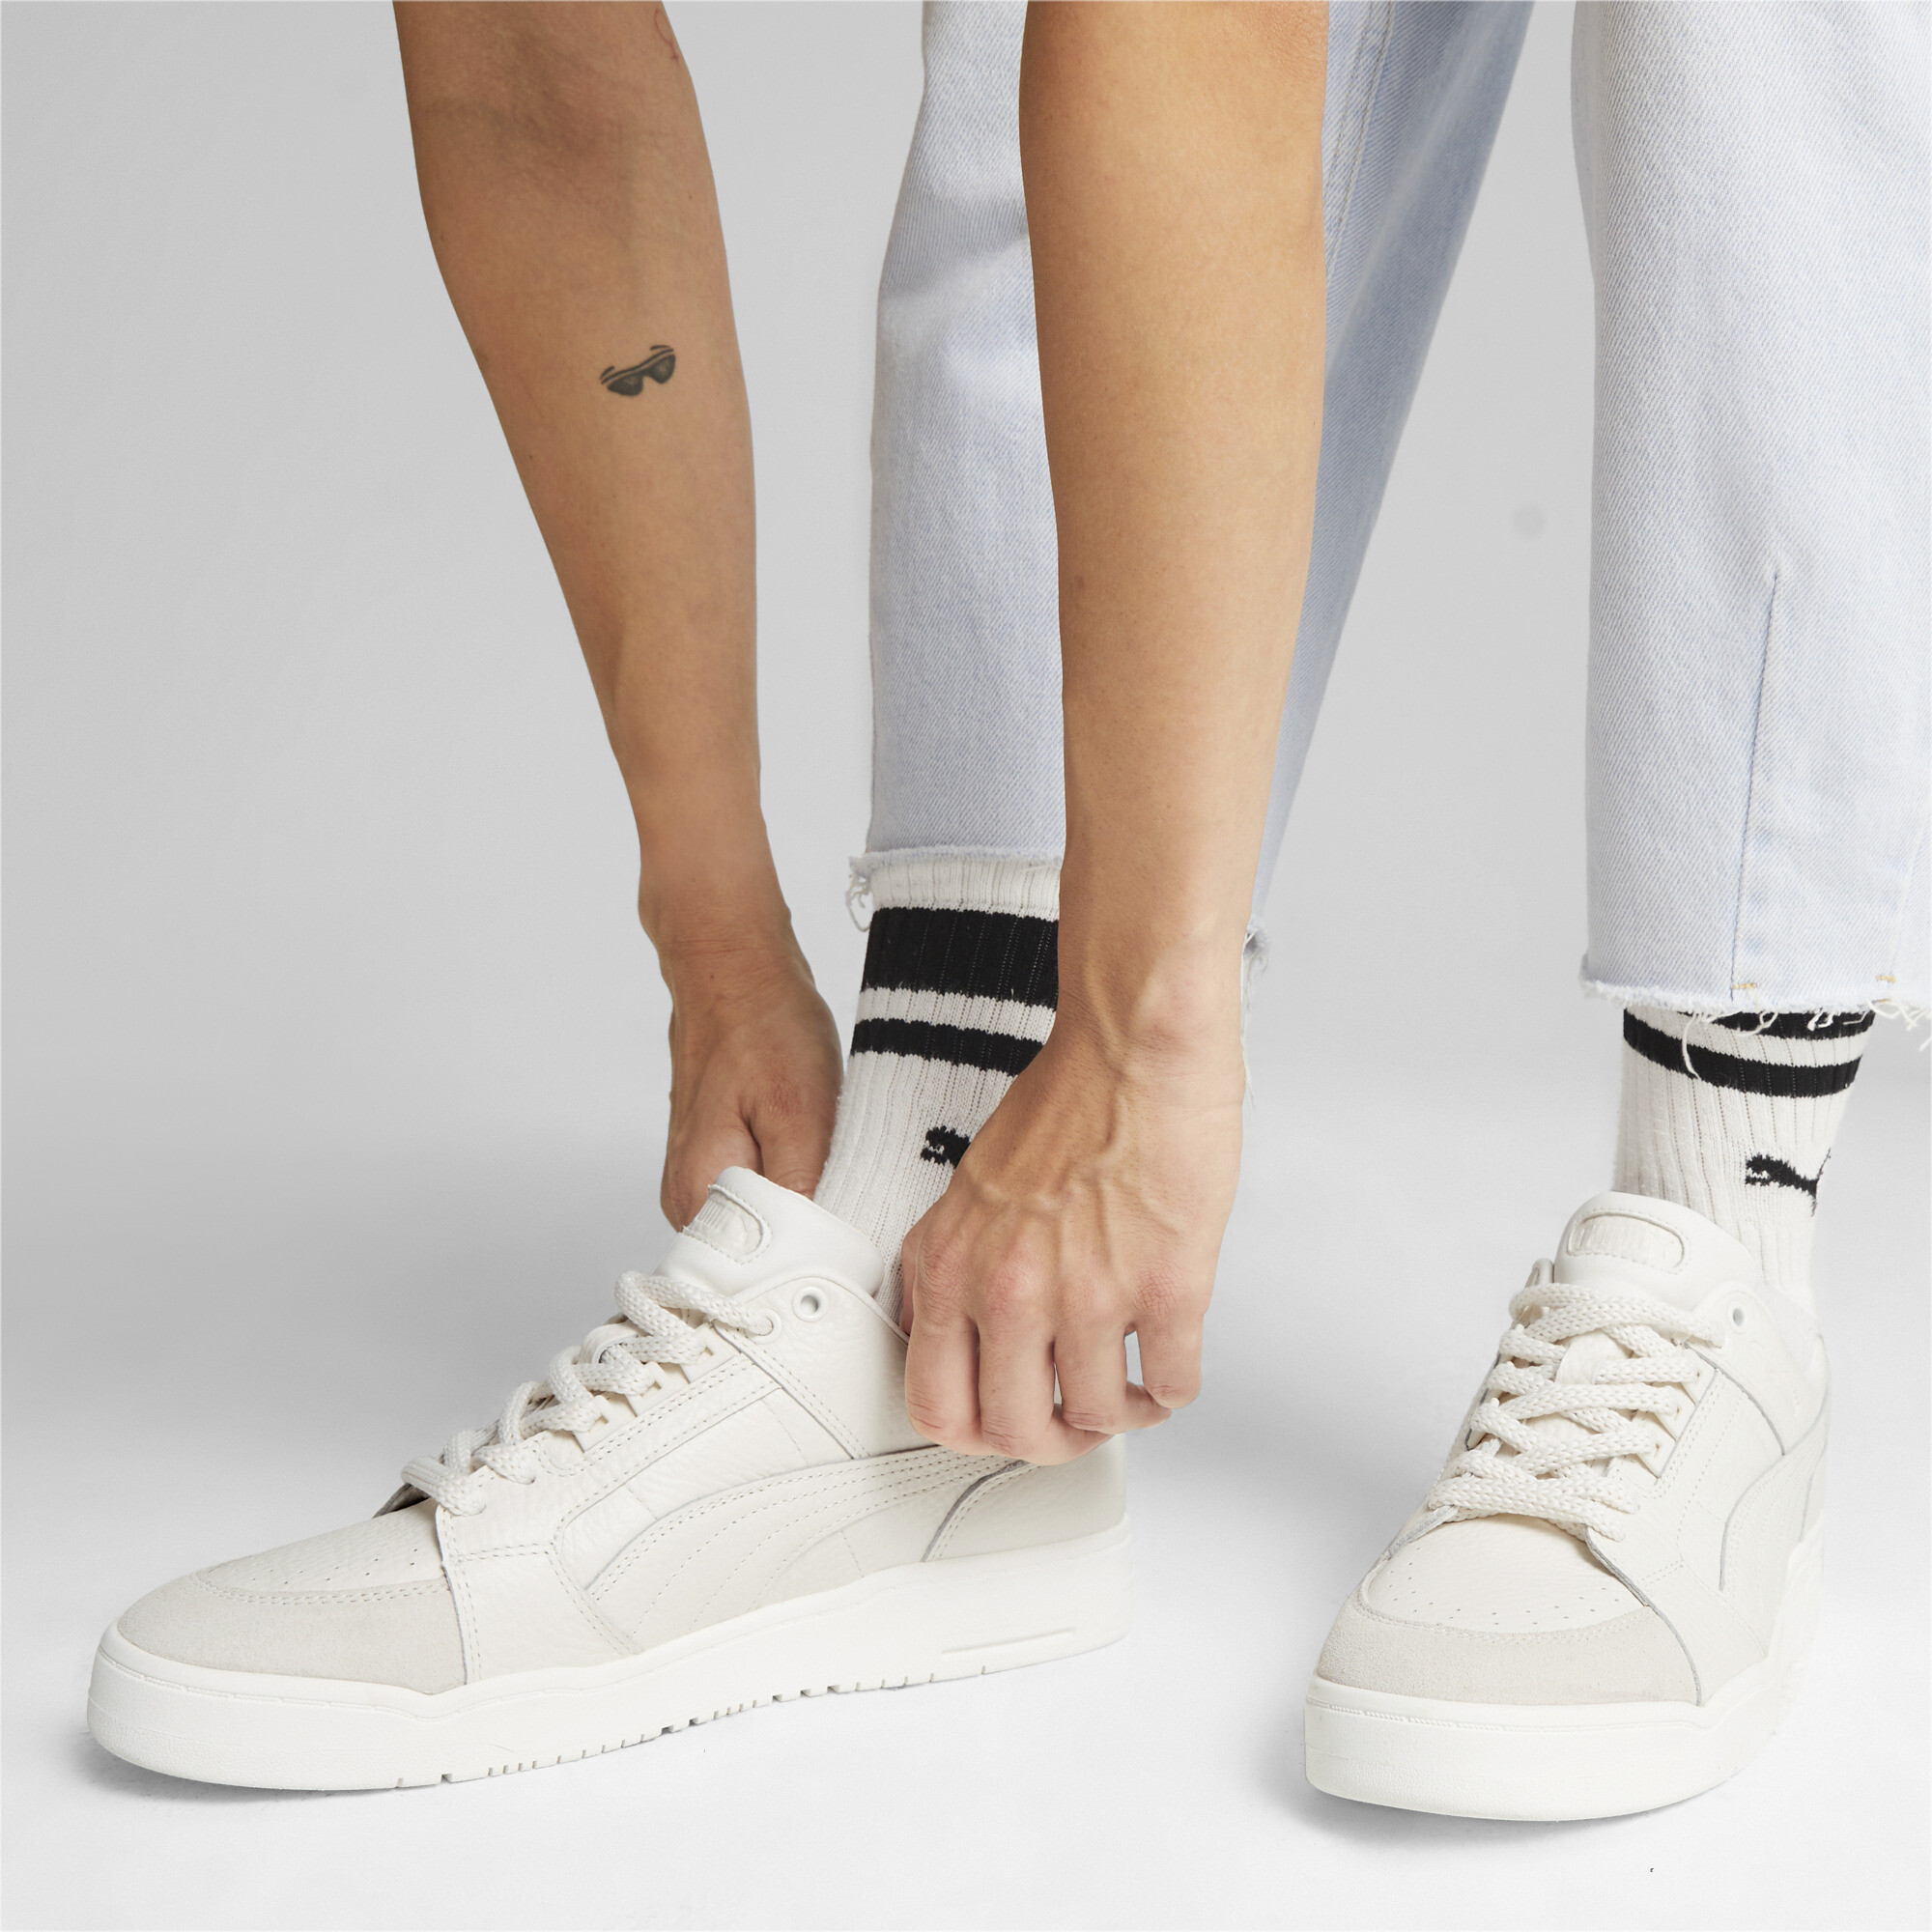 Puma Slipstream Lo Premium Sneakers, White, Size 38, Shoes